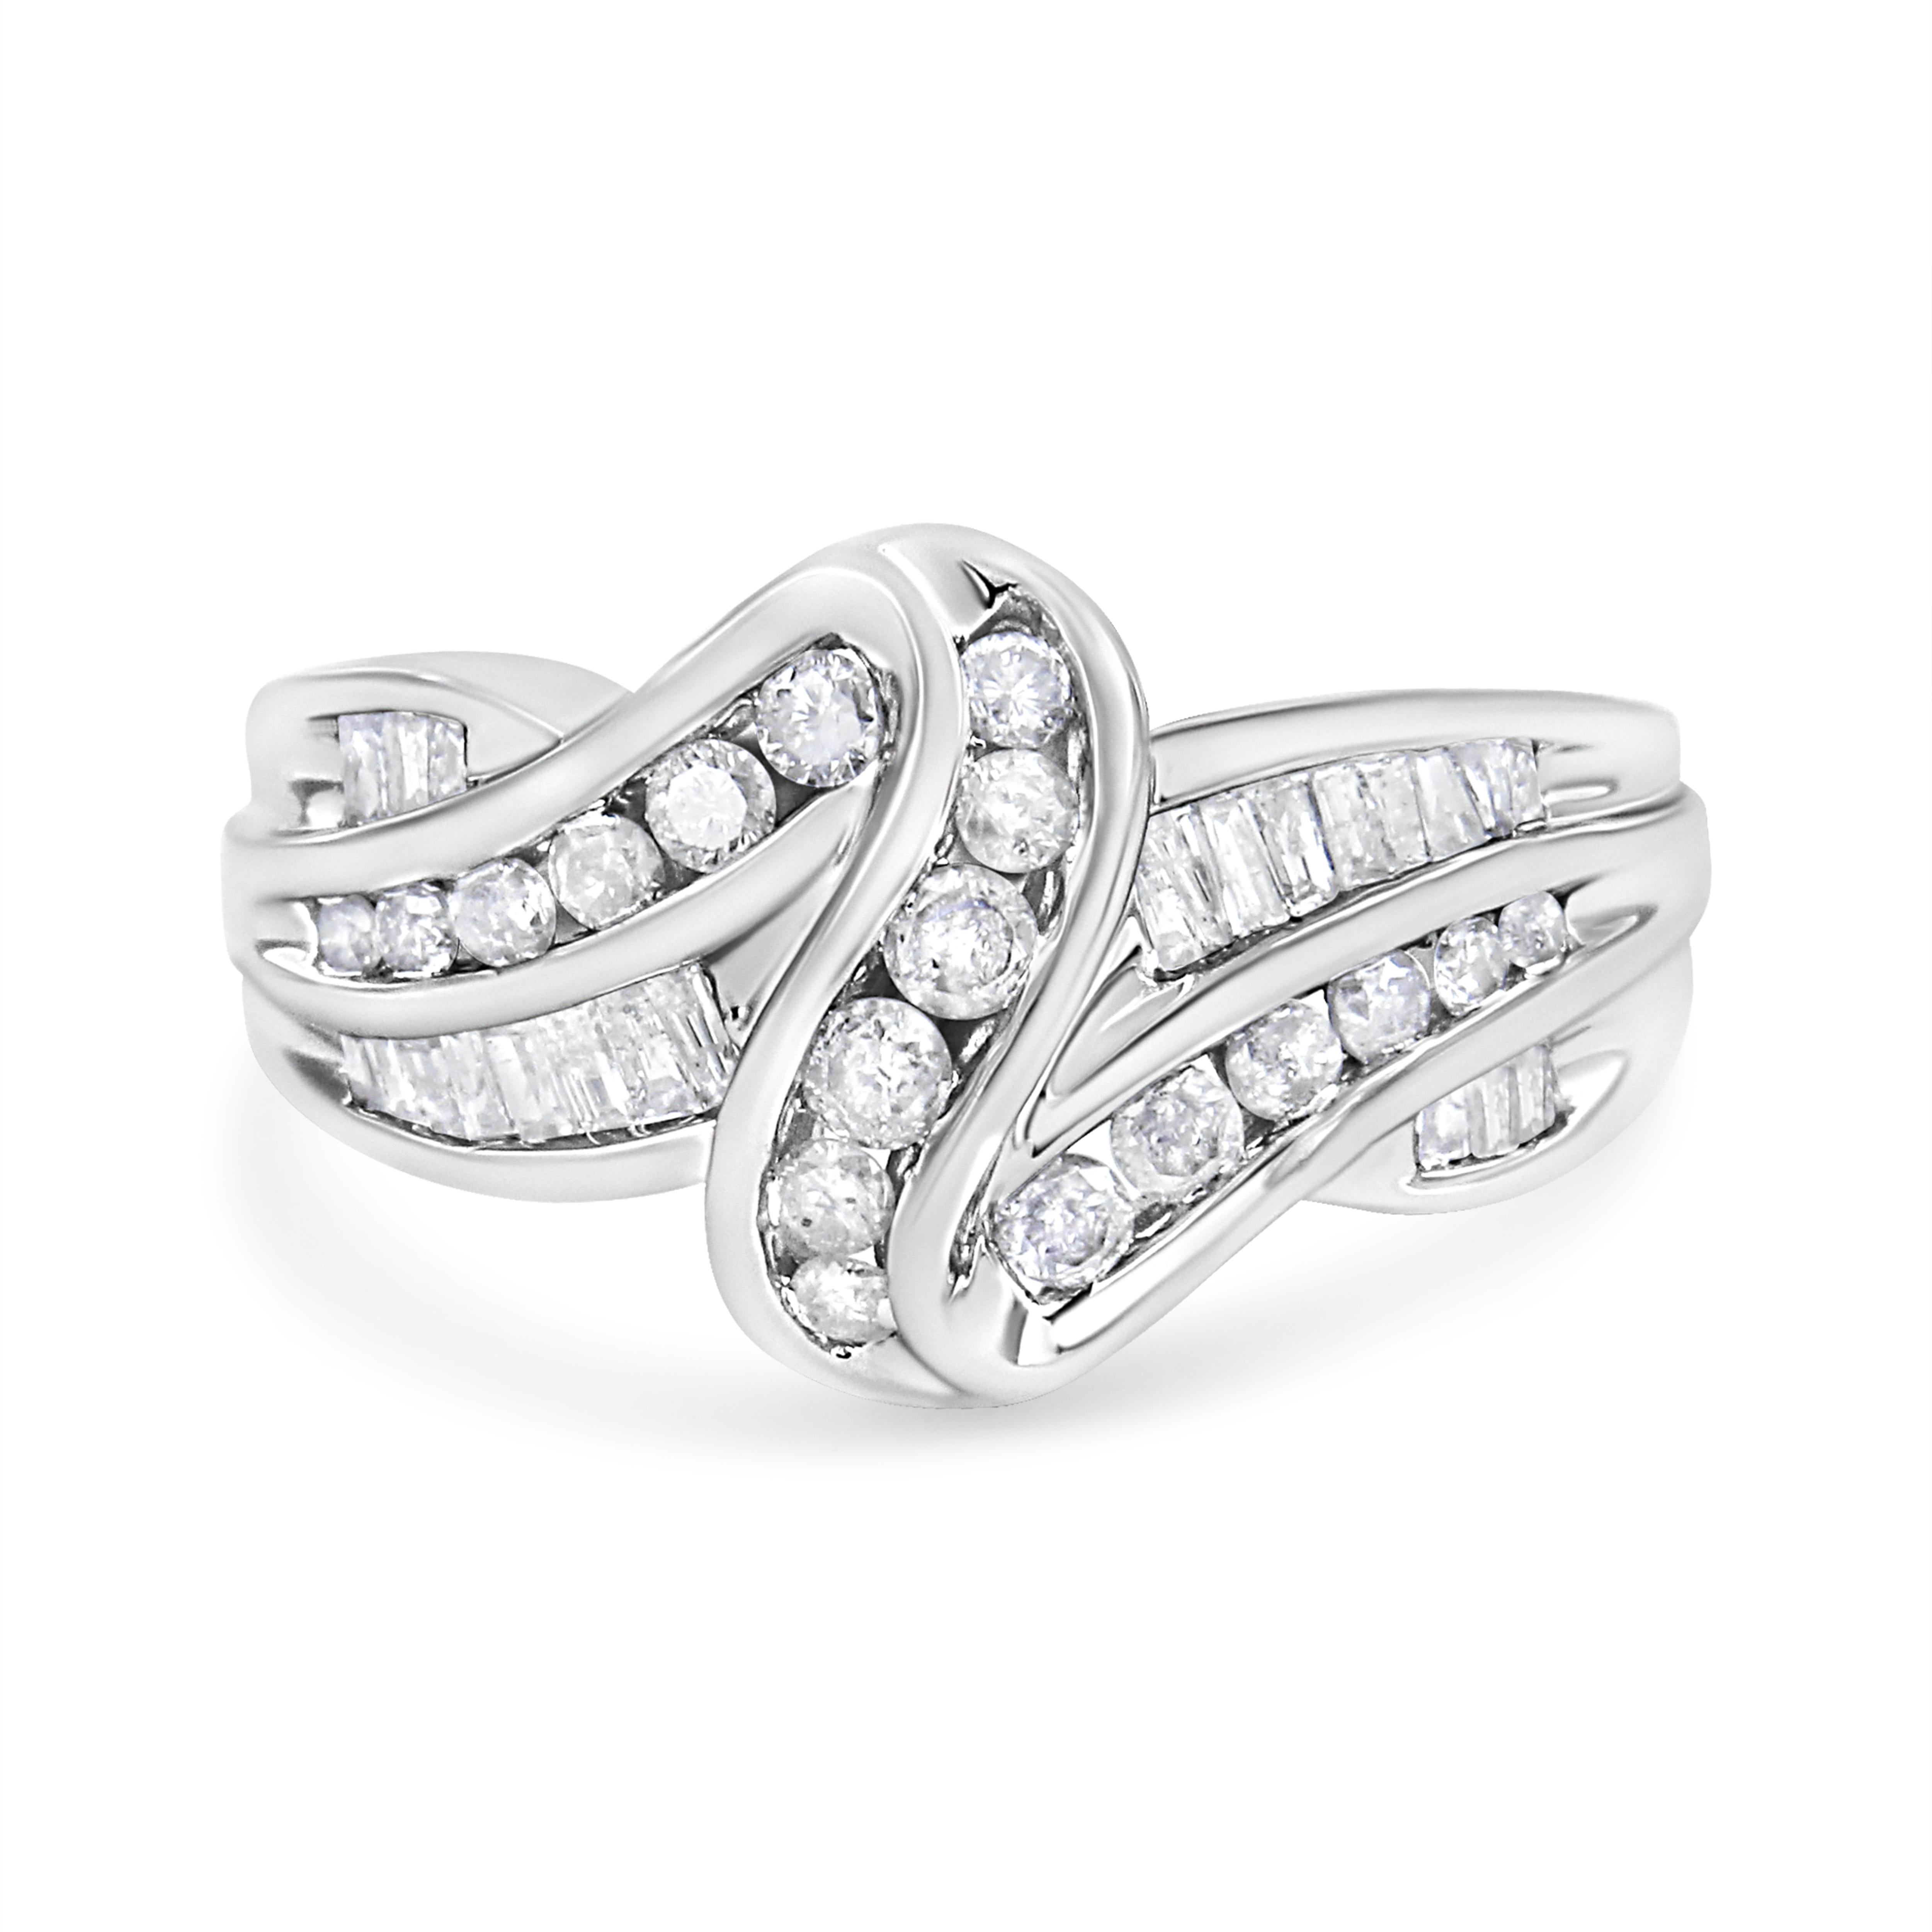 Natürliche Diamanten und schimmerndes Gold greifen ineinander, um dieses auffällige Bypass-Ringdesign zu schaffen. Dieser Ring aus glänzendem 10-karätigem Weißgold sitzt elegant an Ihrem Finger und funkelt mit 3/4 Karat Diamanten. Eine Auswahl an